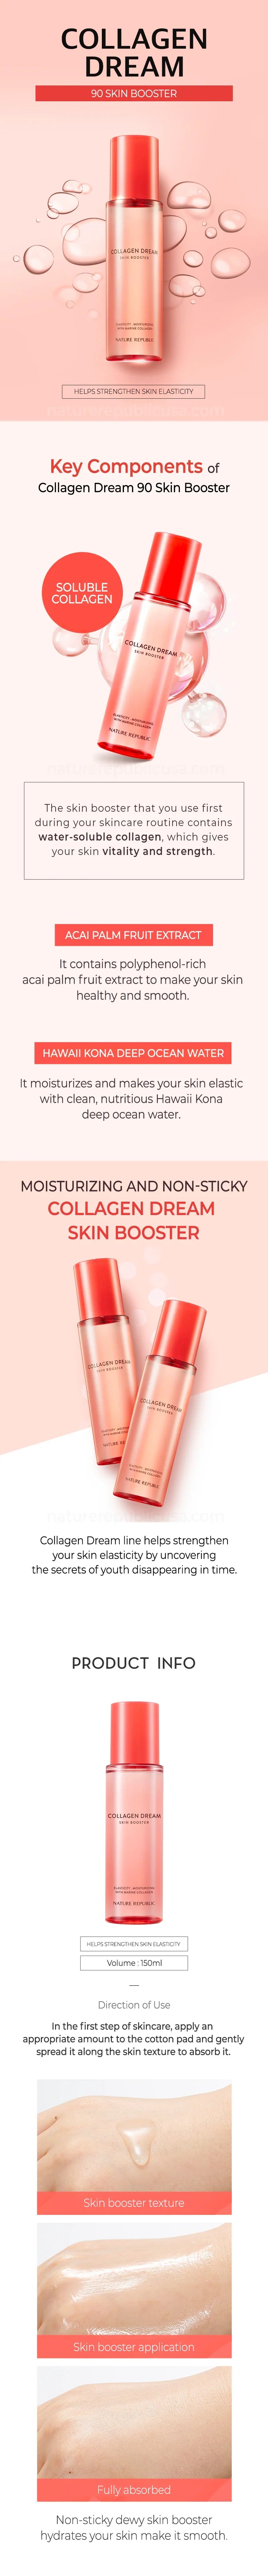 Nature Republic_Collagen Dream 90 Skin Booster 150ml_1